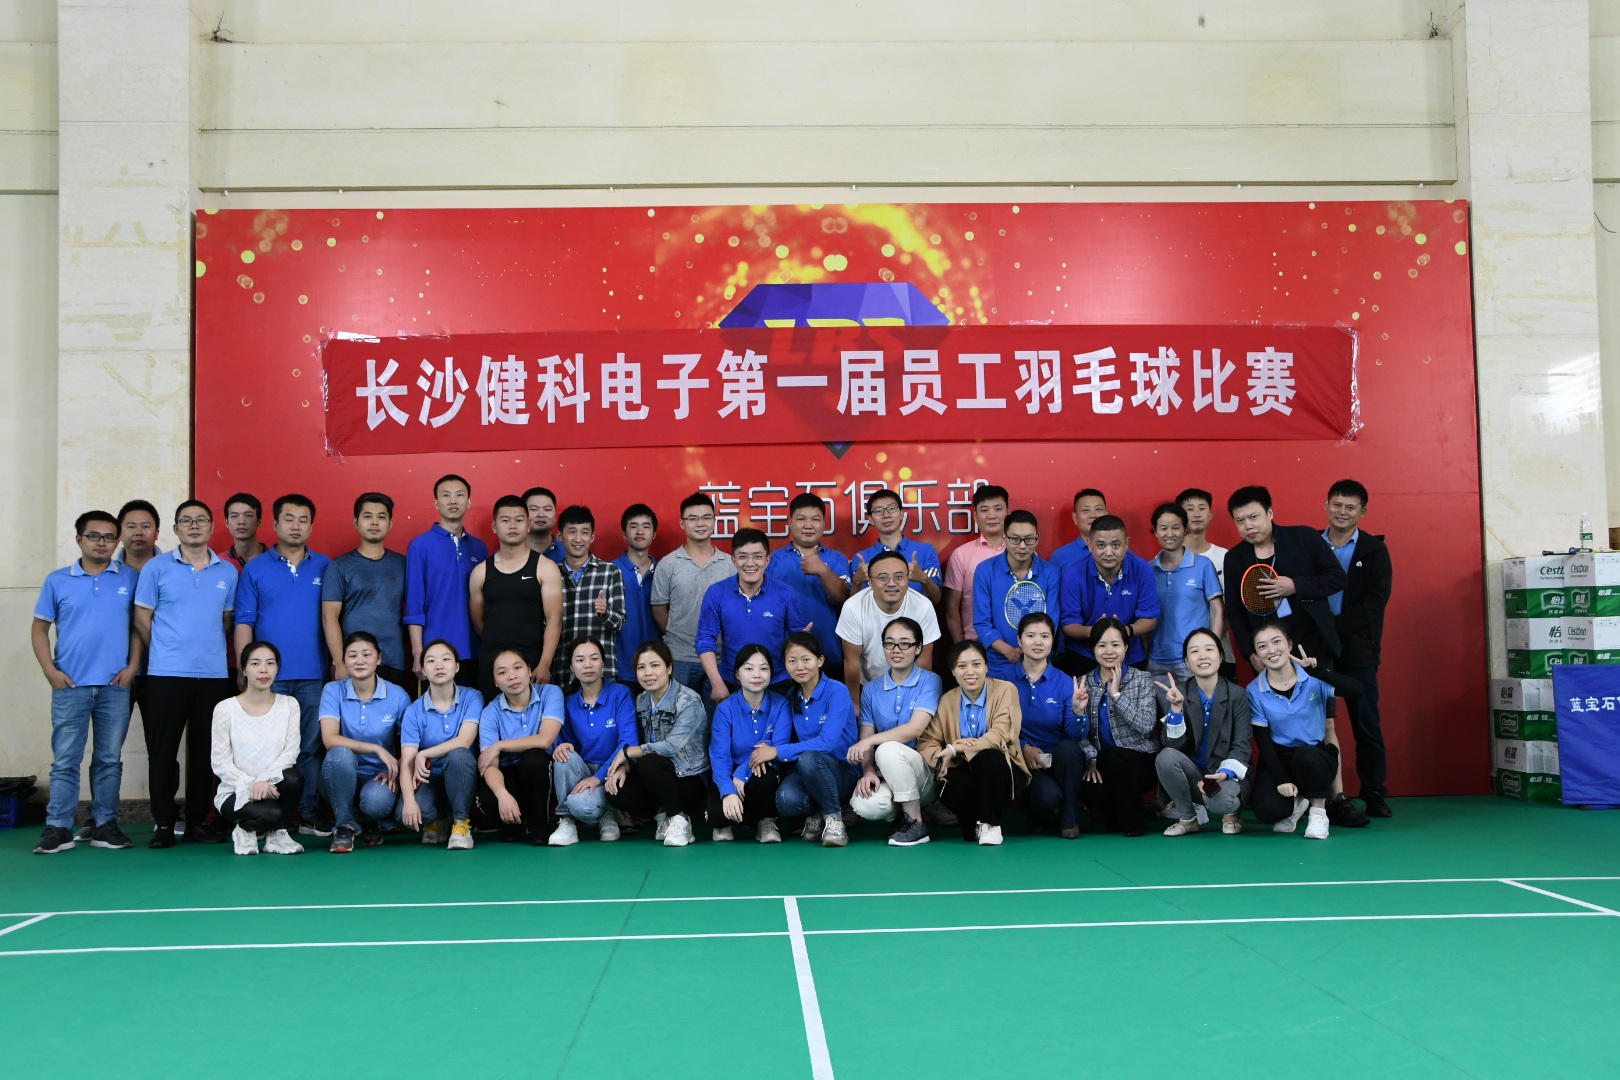 【中国官方网站】长沙市bat365在线平台第一届员工羽毛球比赛成功举办